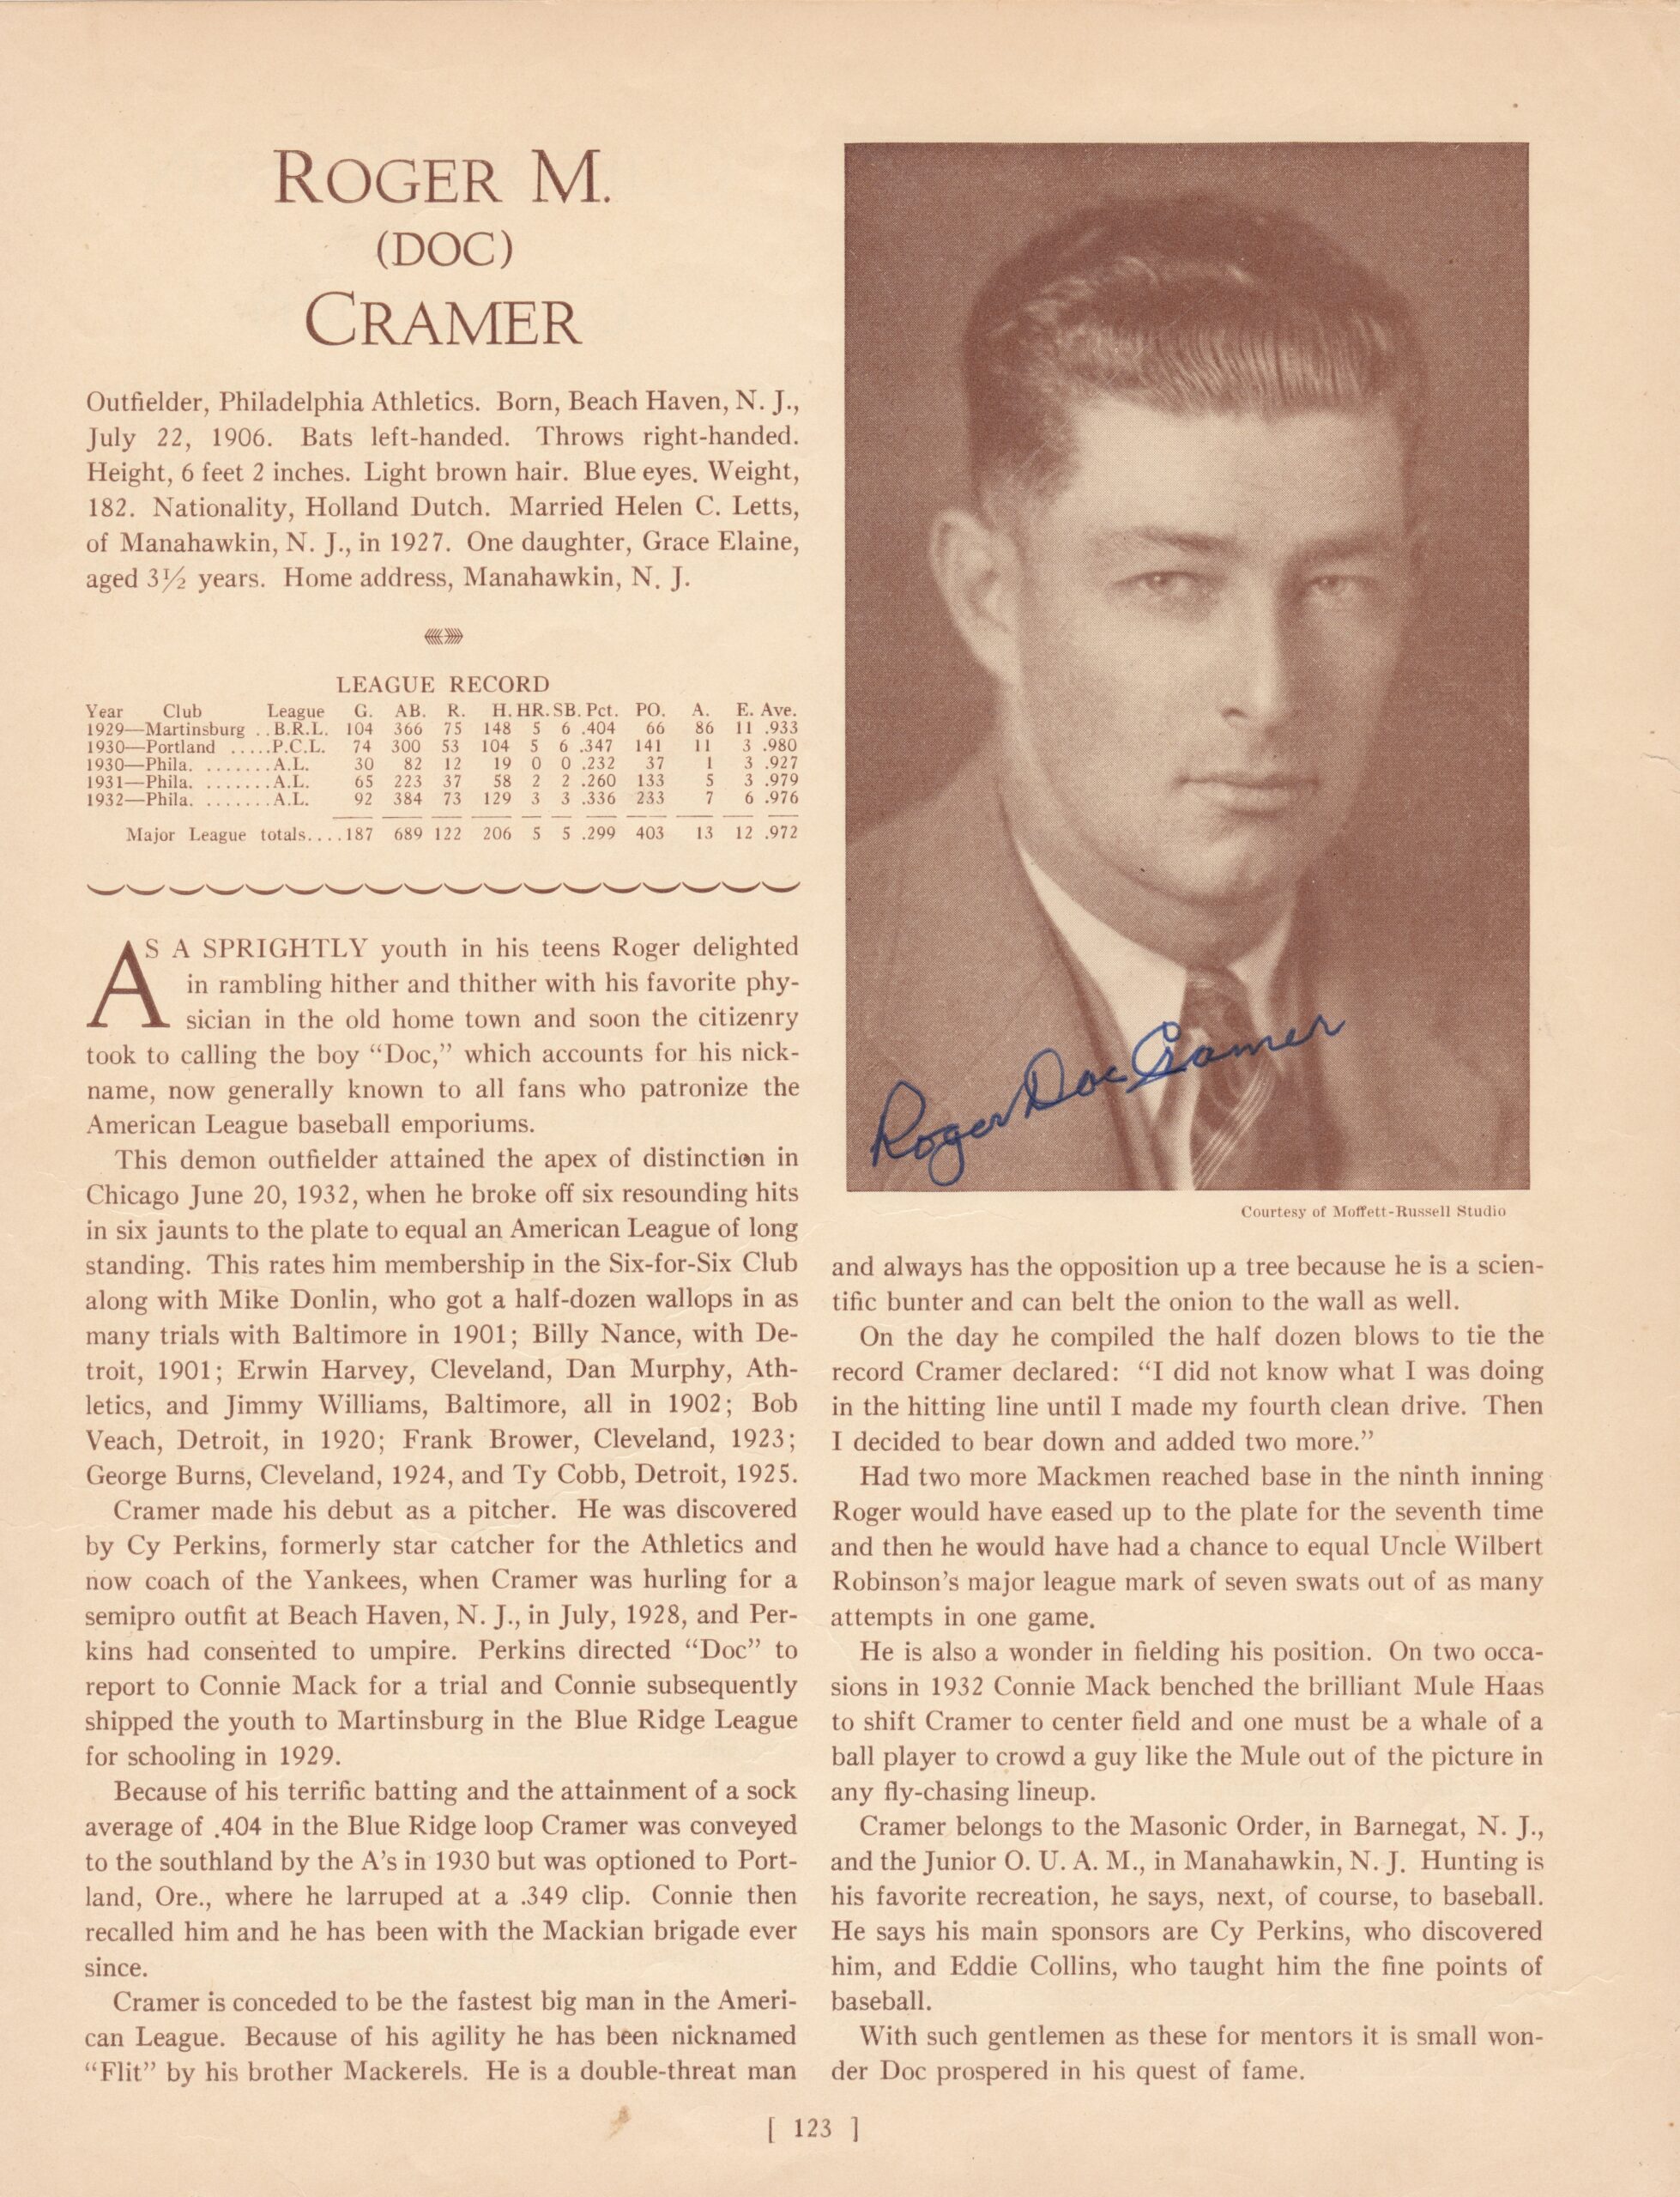 Doc Cramer - Cooperstown Expert